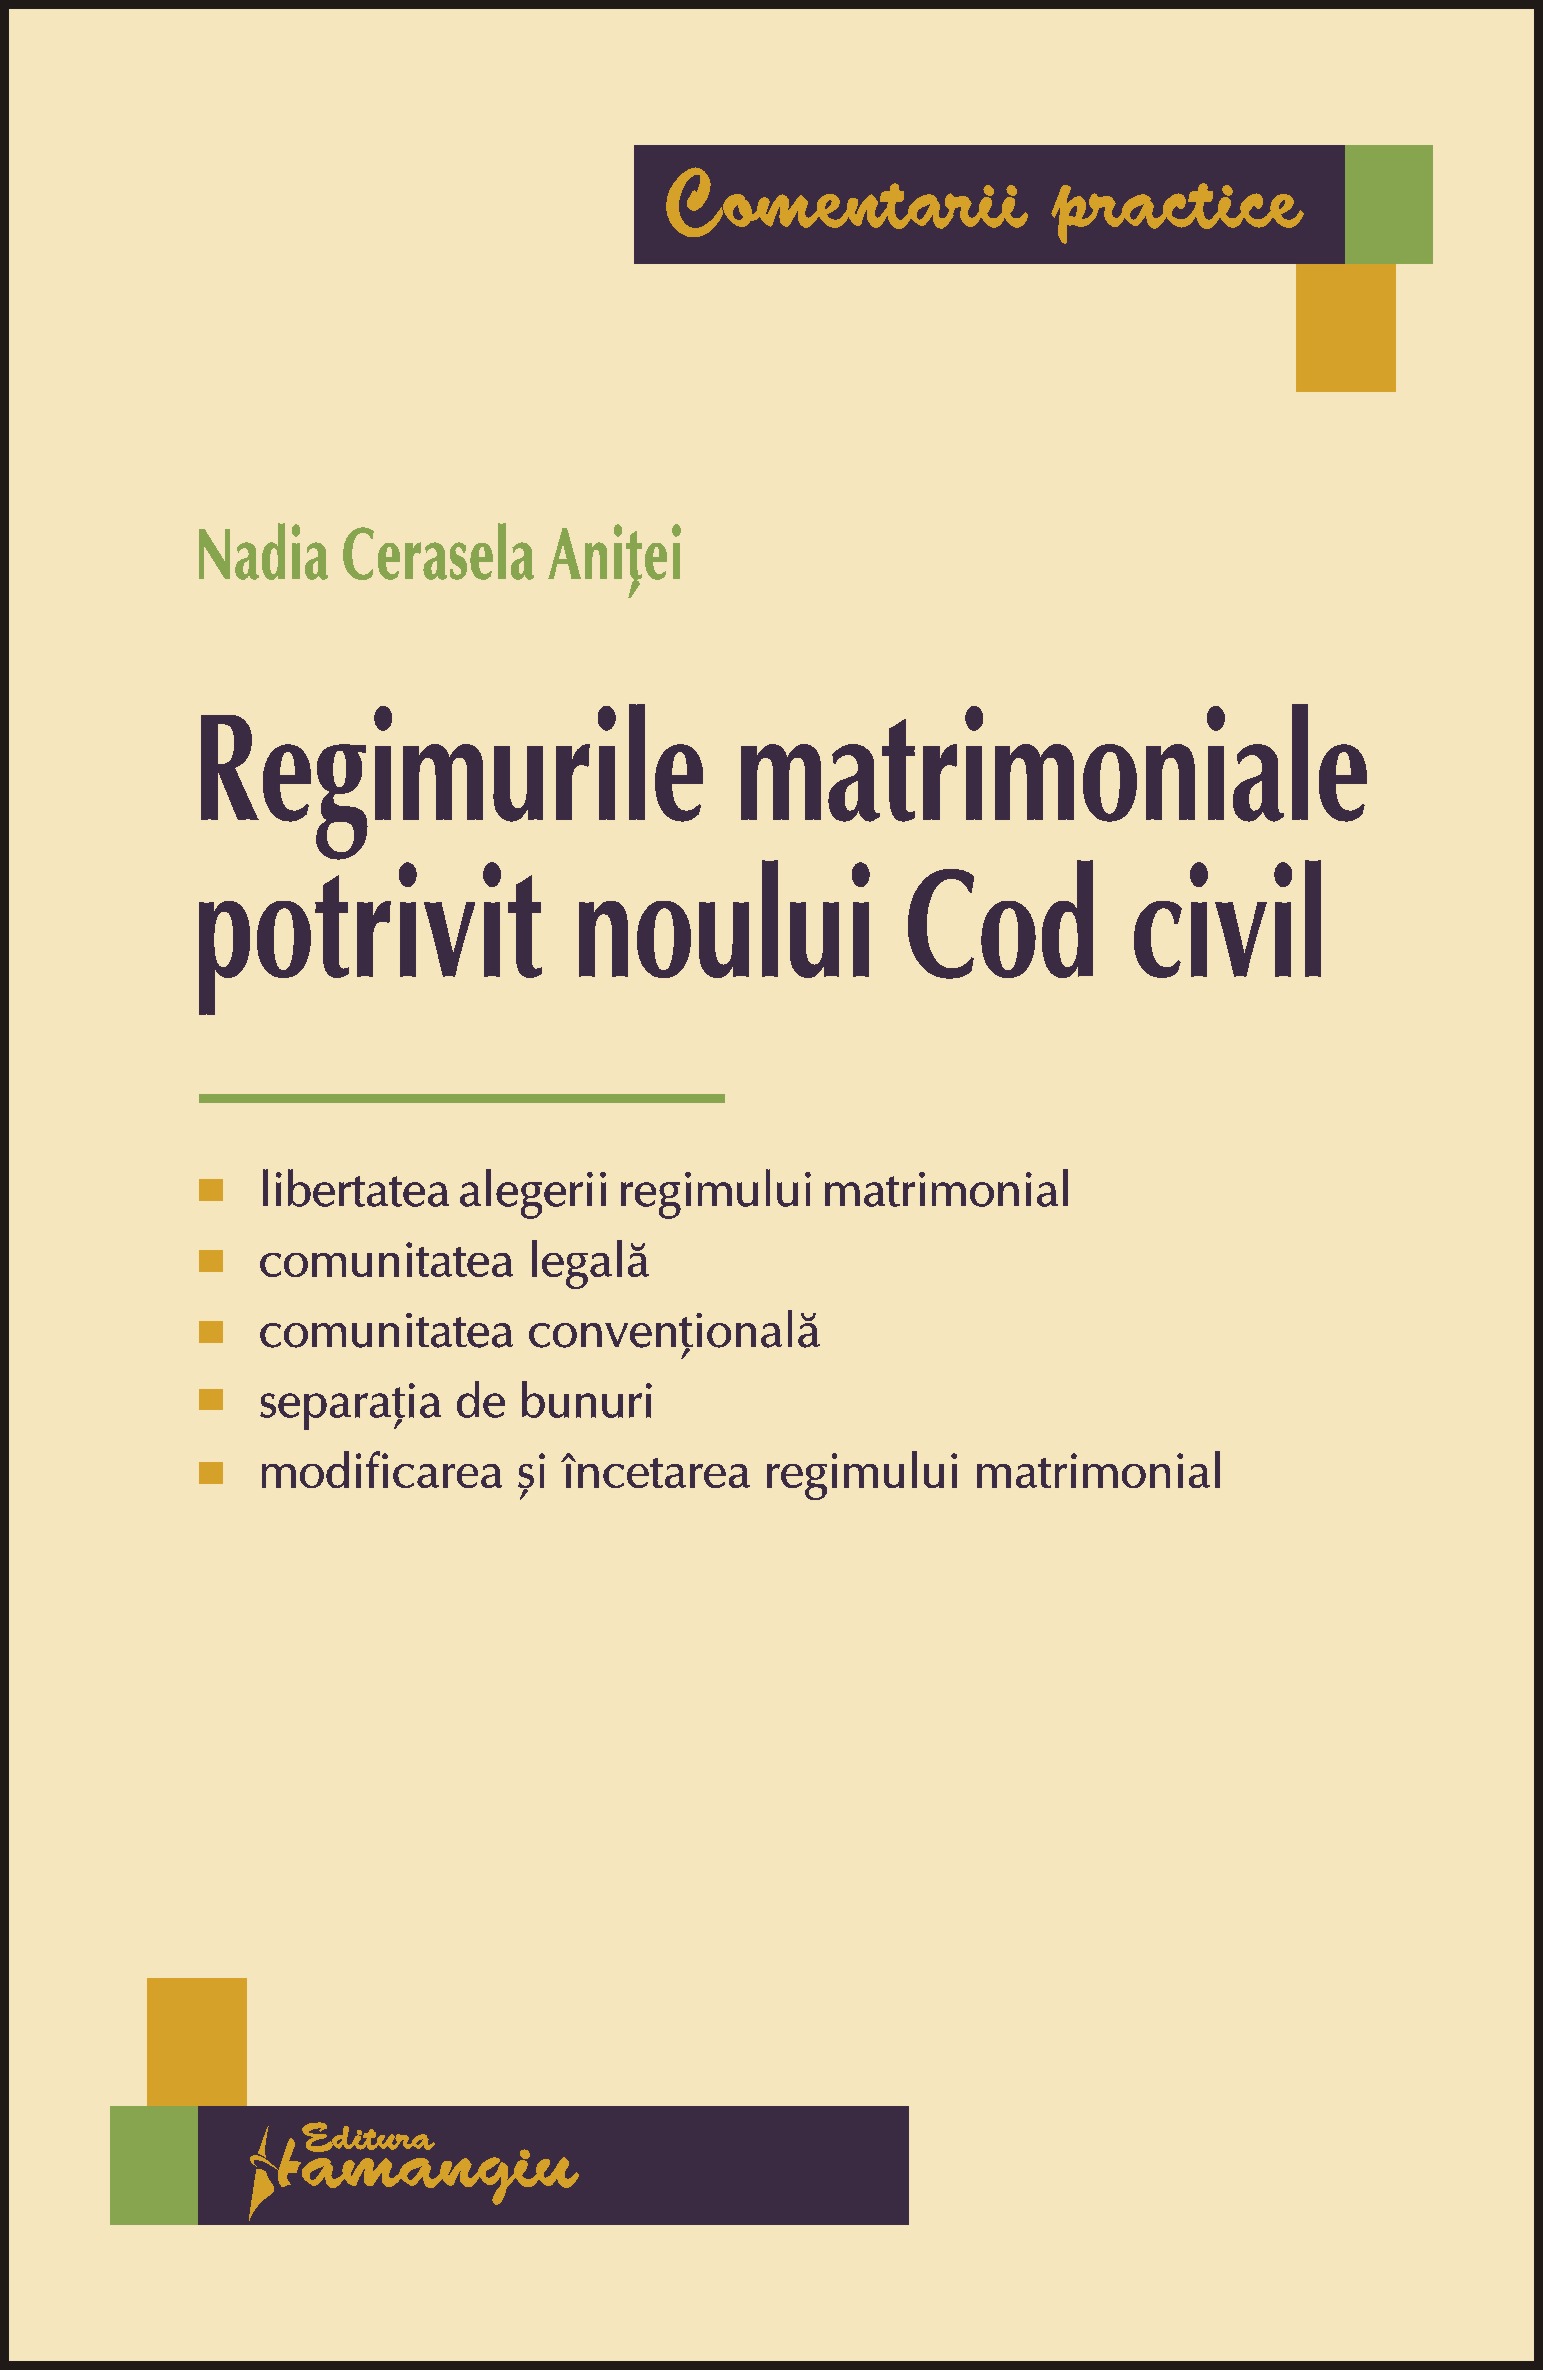 Regimurile matrimoniale Ppotrivit noului Cod Civil - Nadia Cerasela Anitei